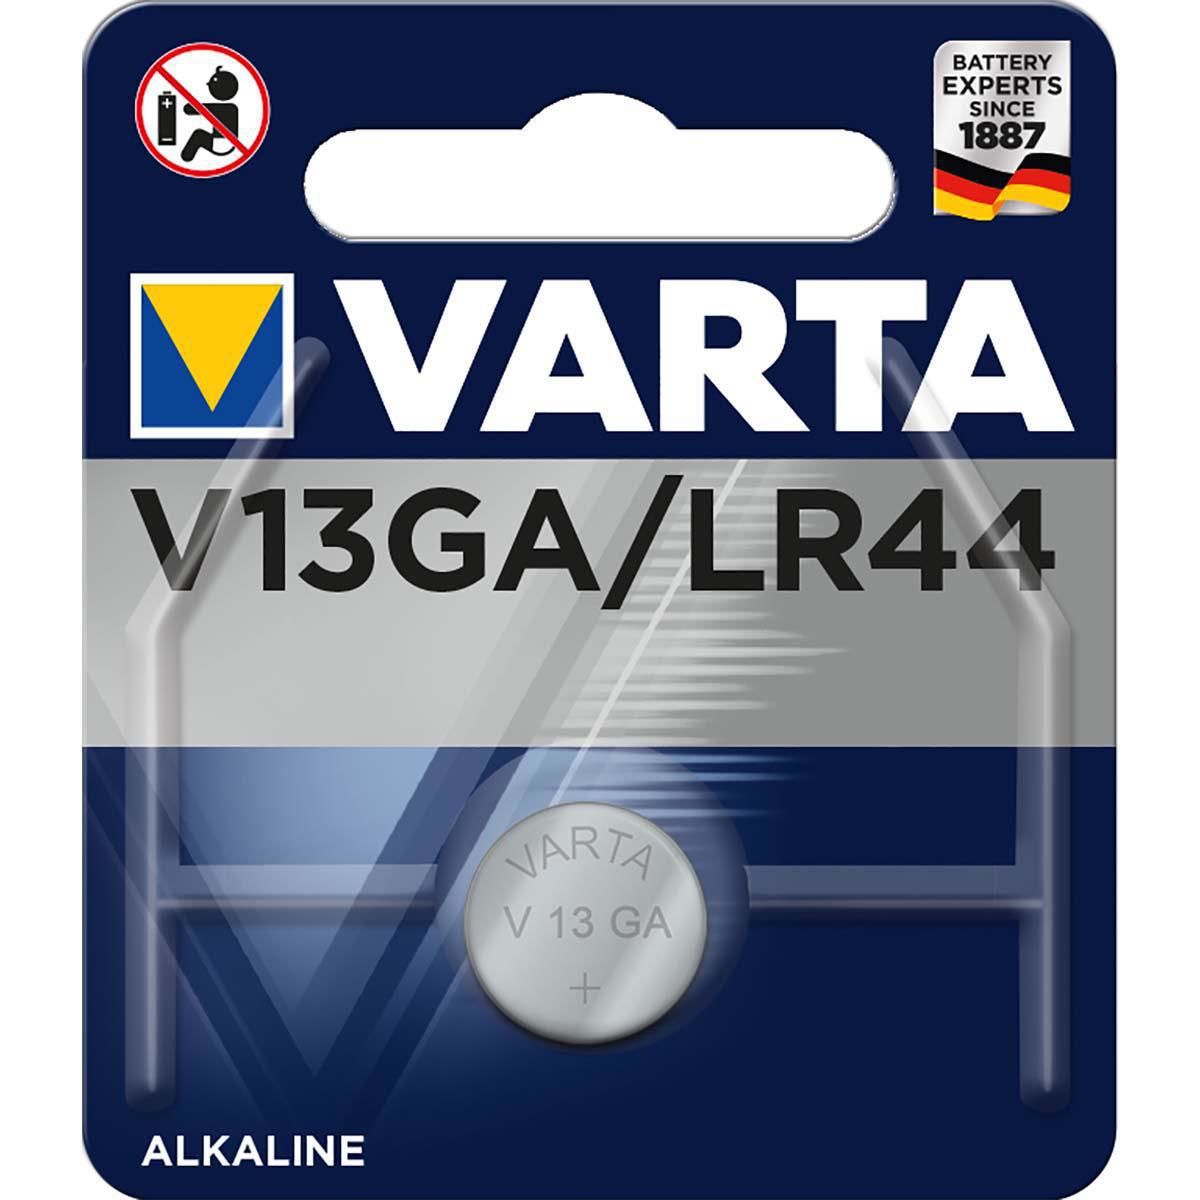 Varta V13 Ga 1,5 Alkaline Pil Lr44